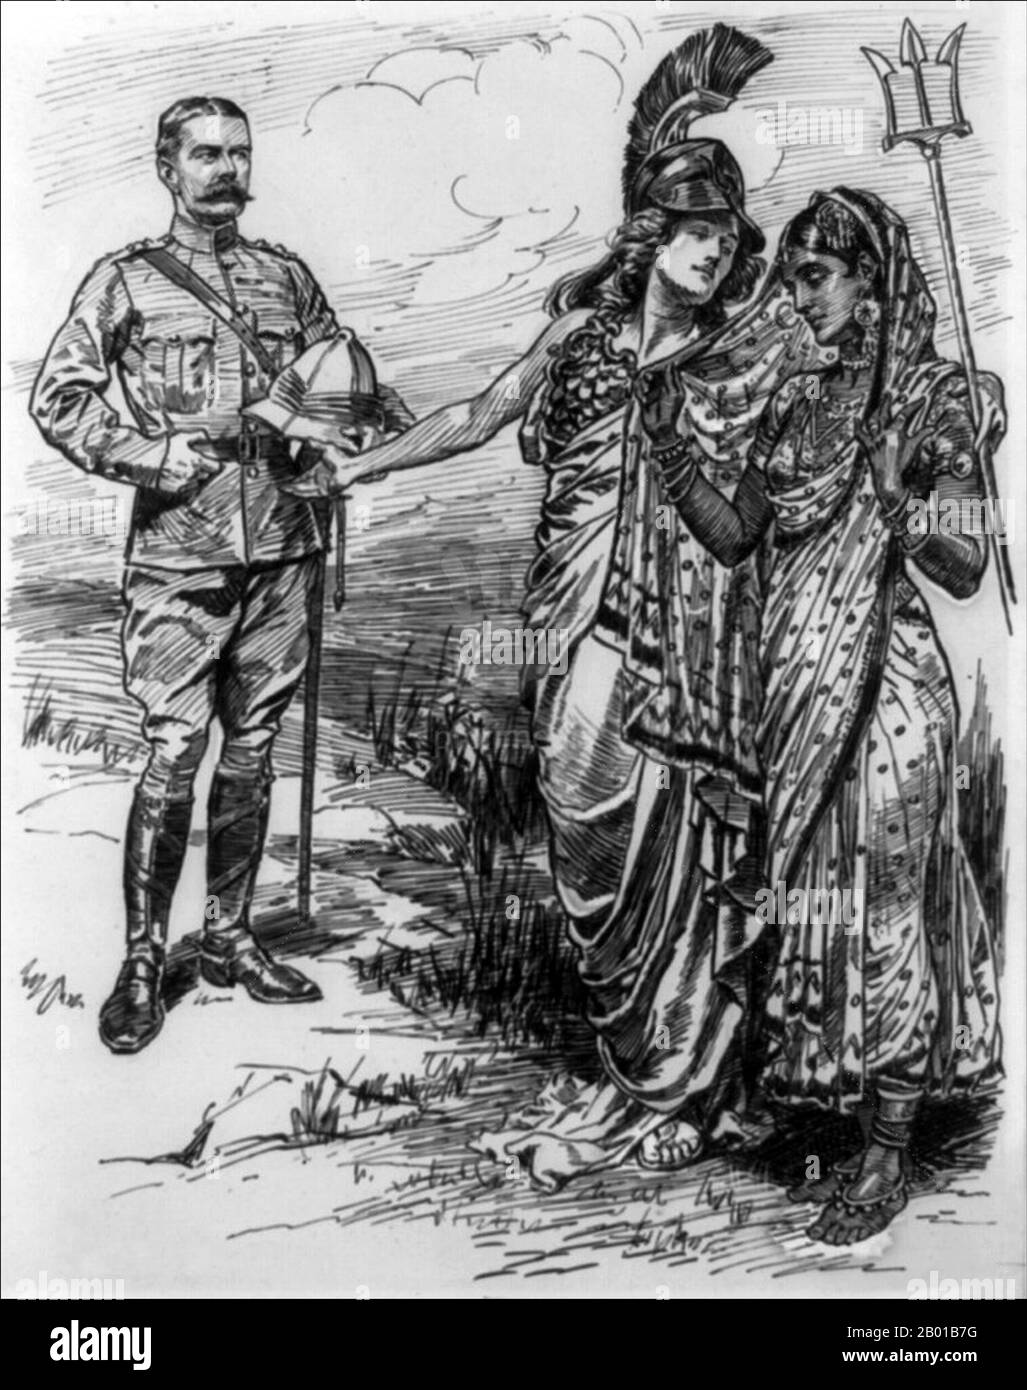 Regno Unito/India: "Verso est ho!". Cartoon per 'Punch' di Sir John Bernard Partridge (11 ottobre 1861 - 9 agosto 1945), 16 luglio 1902. Inscritto sotto il titolo: 'Possiamo ammalarlo di riserva; ma vedete che vi diamo del nostro meglio.' Britannia, tenendo il suo tridente, introduce Lord Kitchener in un'India demuamente velata. Horatio Herbert Kitchener (24 giugno 1850 - 5 giugno 1916) è stato comandante in capo dell'India (r. 1902-1909) dopo il suo trionfante ritorno dalle Guerre Boere in Sud Africa nel 1902. Foto Stock